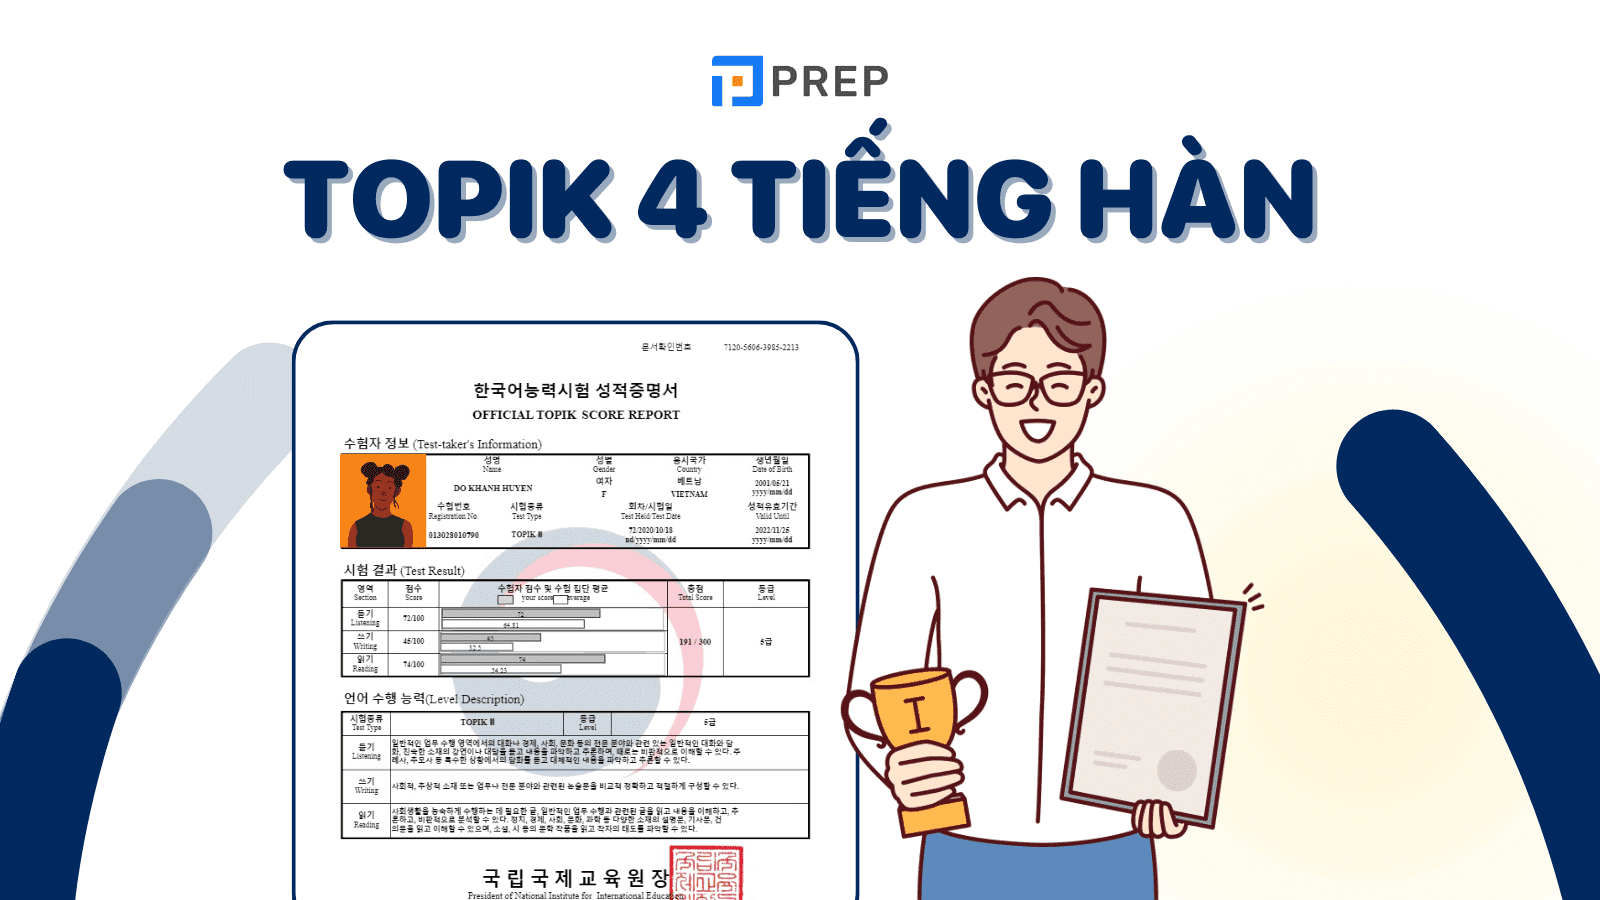 TOPIK 4 là gì? Thông tin chi tiết về trình độ TOPIK 4 tiếng Hàn